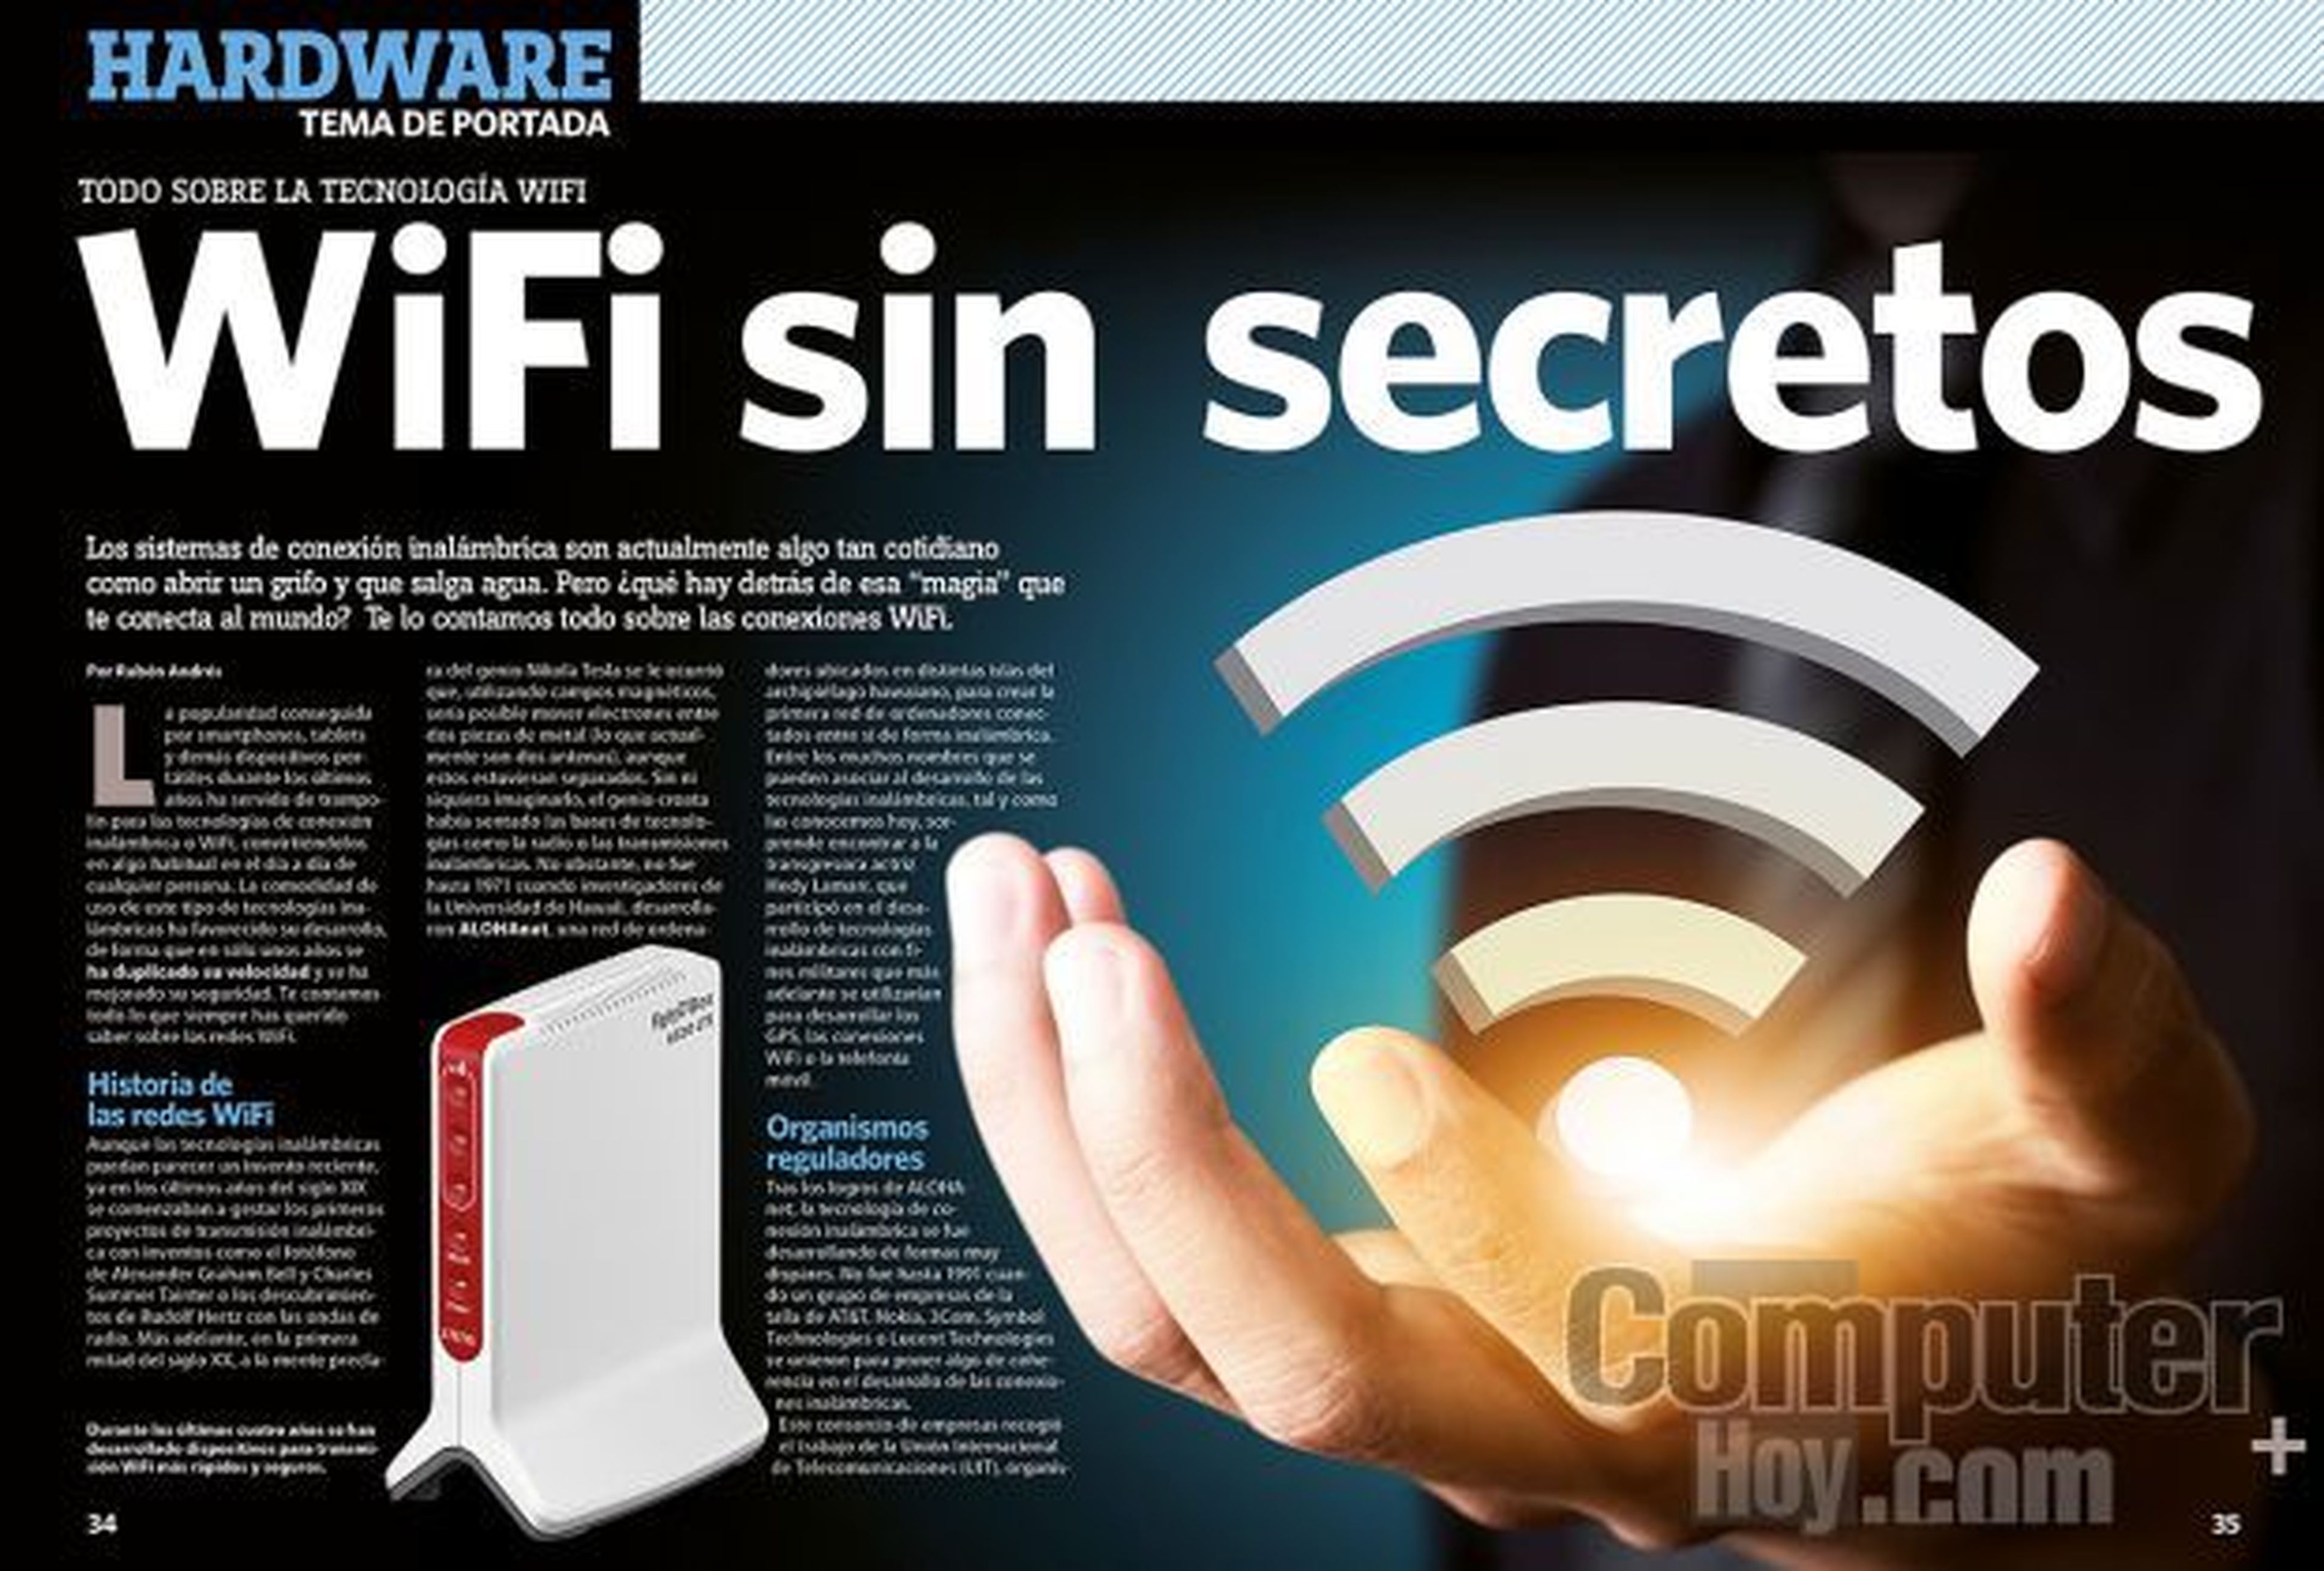 WiFi sin secretos